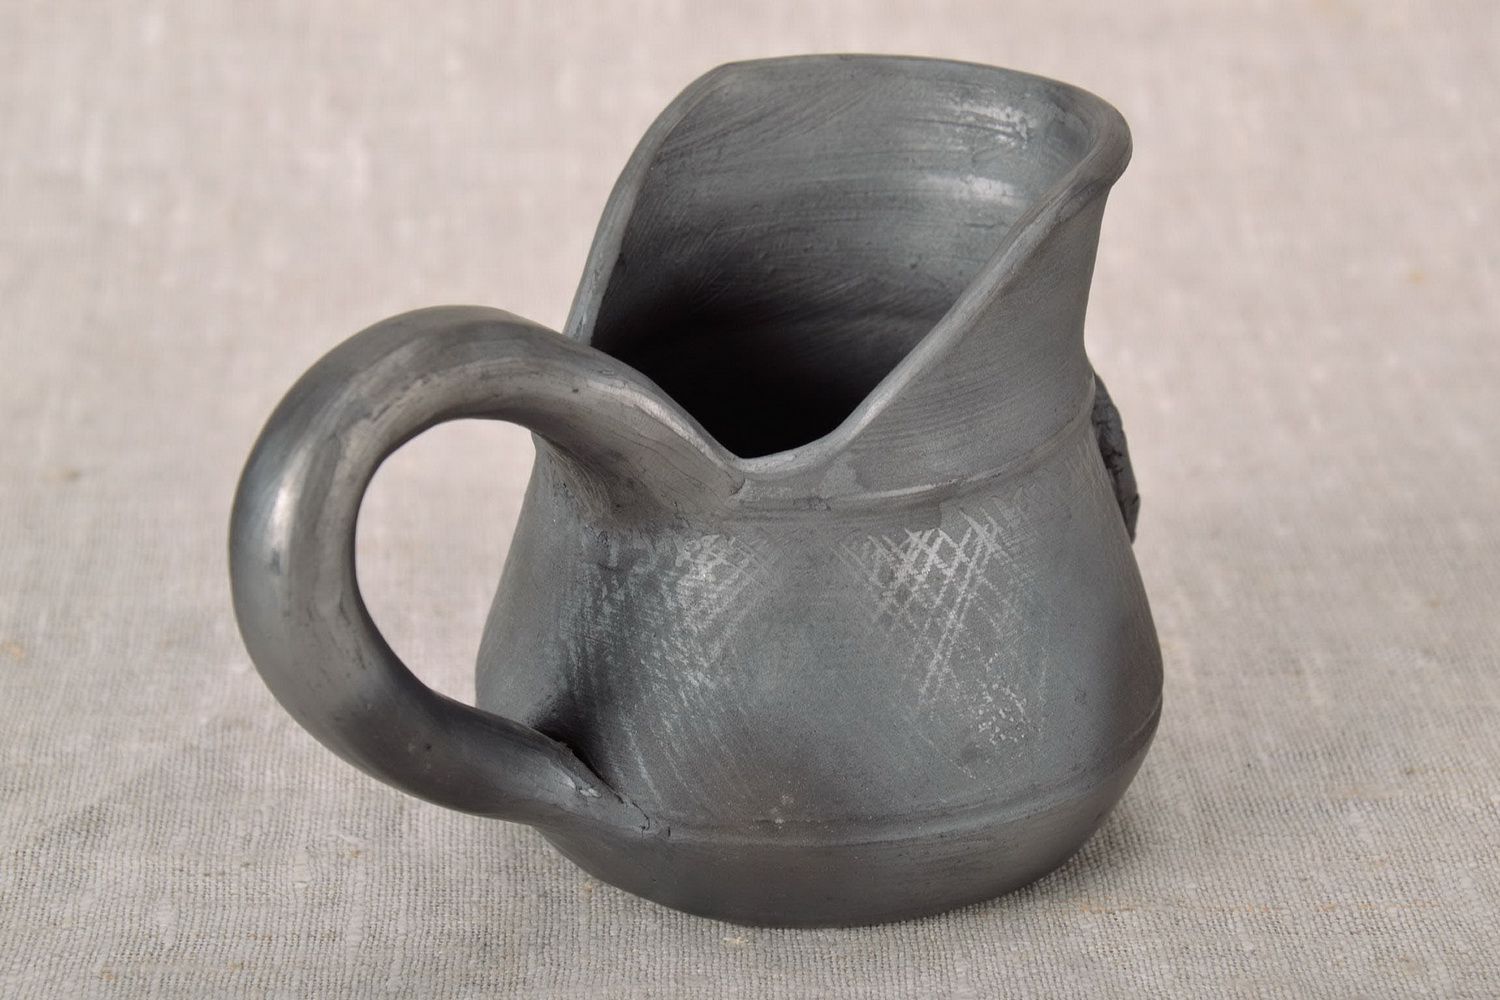 10 oz ceramic creamer jug with handle in black color 0,5 lb photo 3